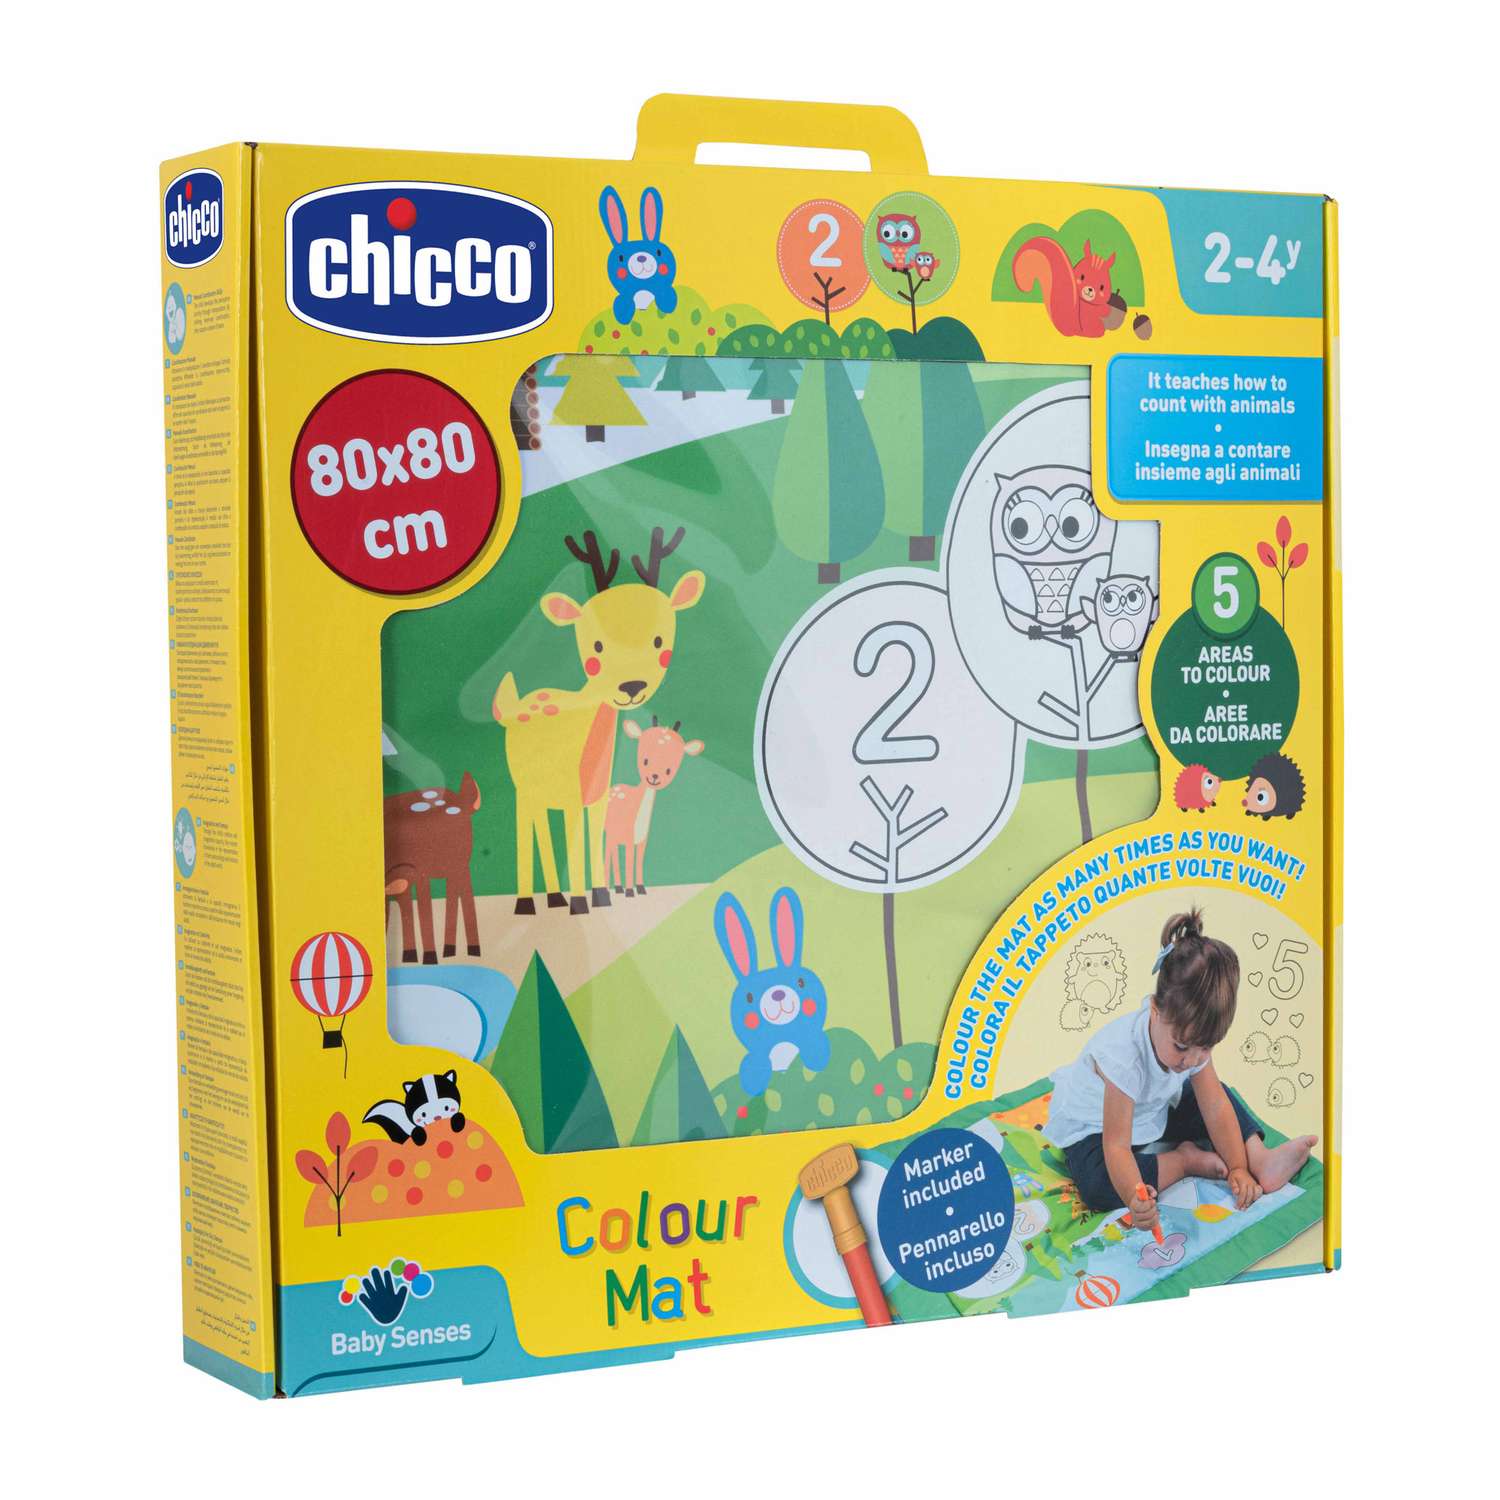 Коврик CHICCO Игровой развивающий детский коврик Colour Mat - фото 3